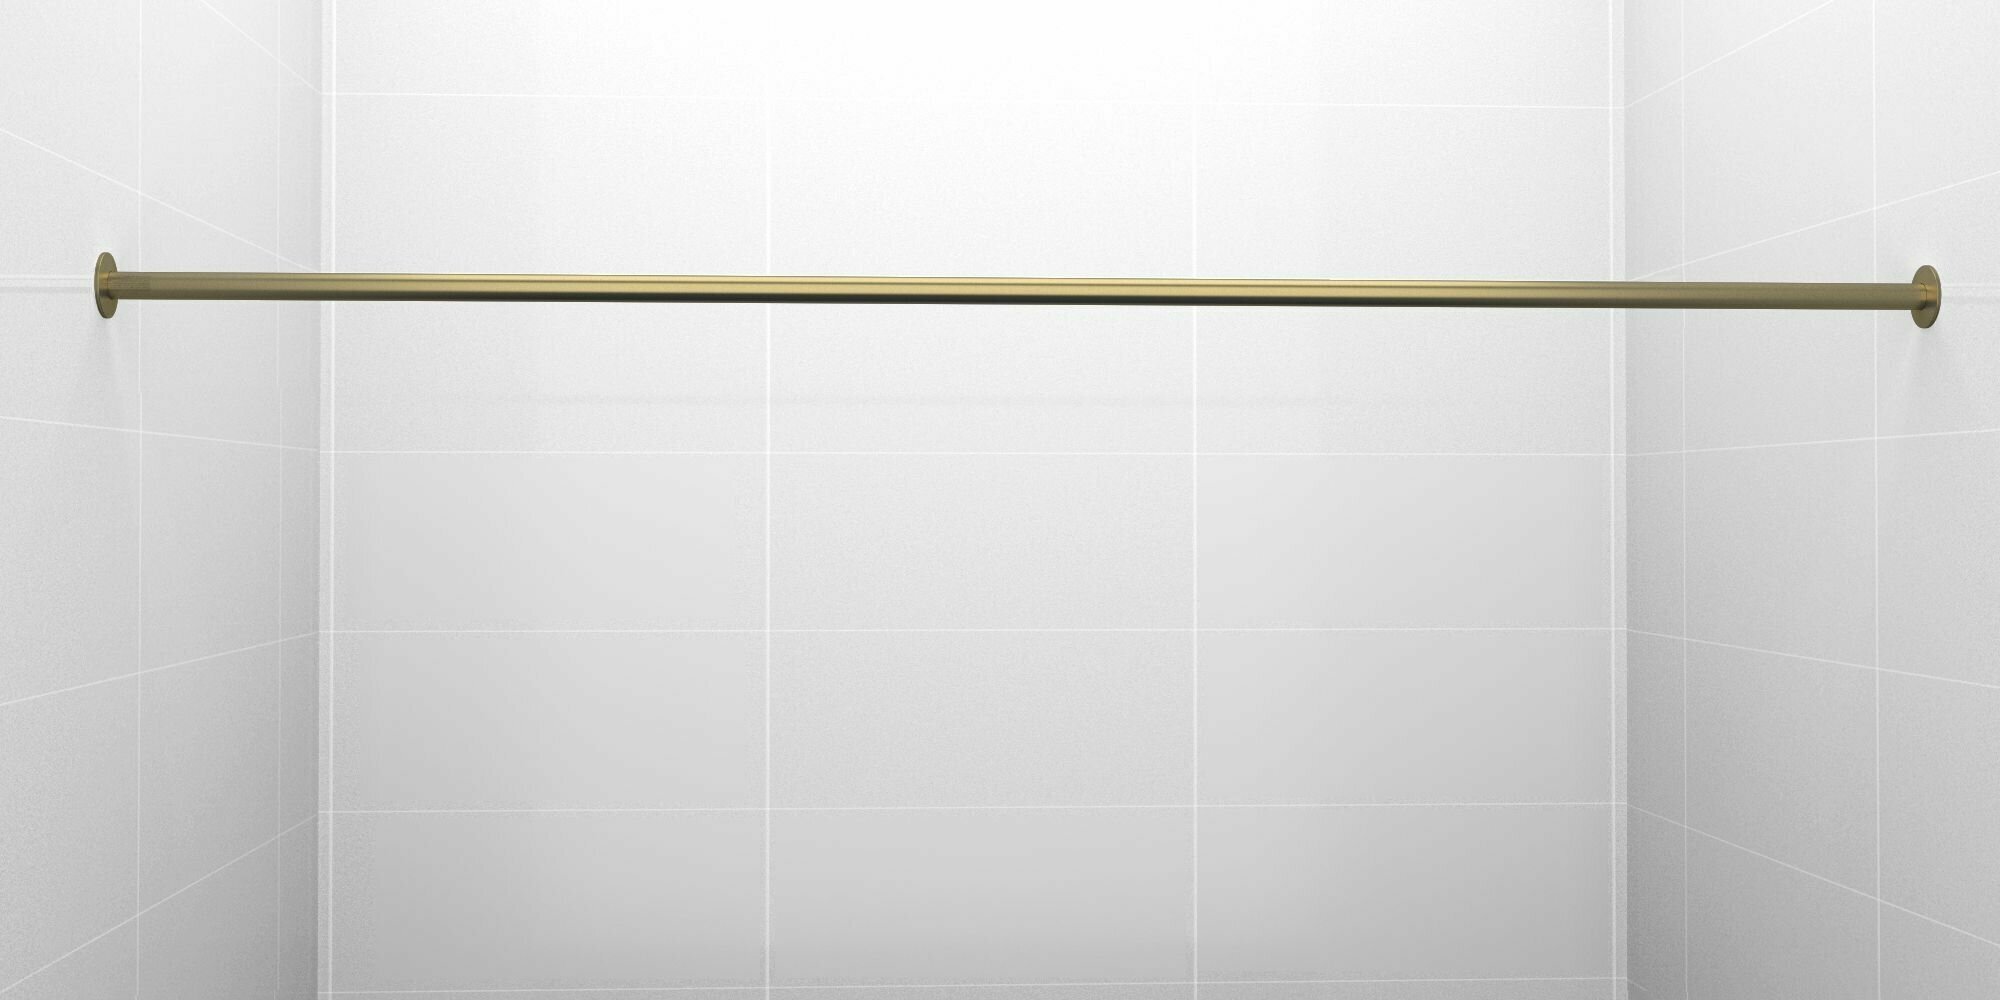 Карниз для ванной 180см (Штанга 20мм) Прямой Усиленный, цельный из нержавейки цвет бронза